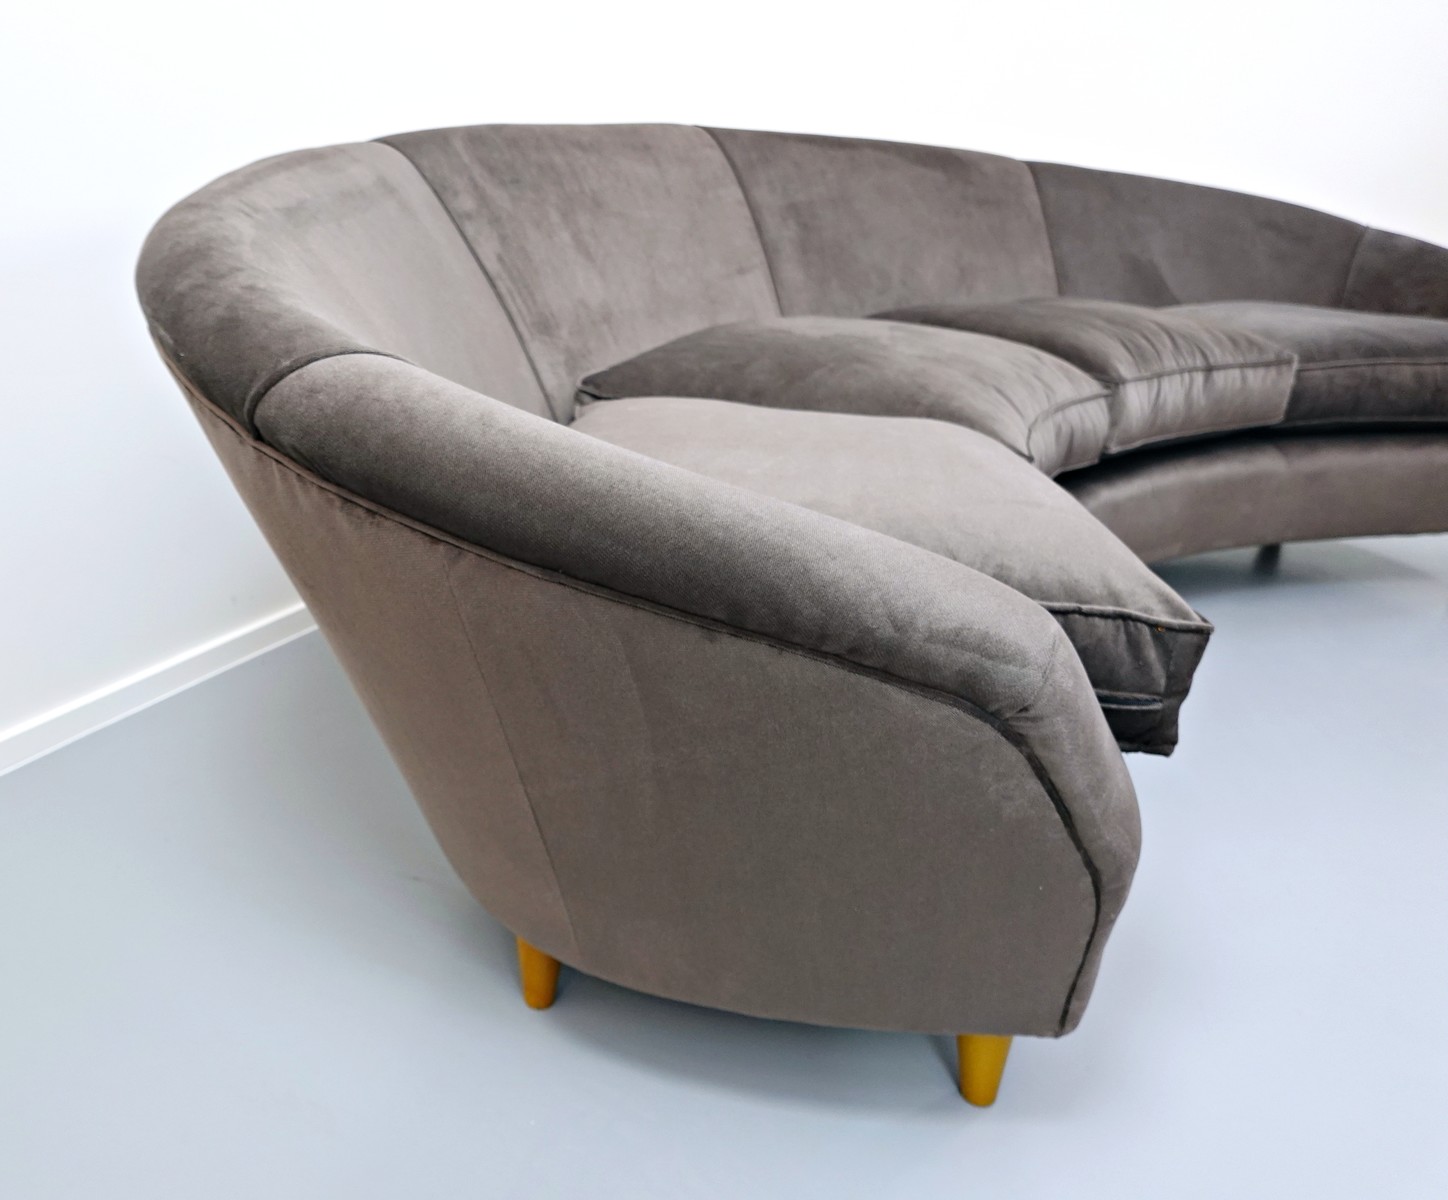 big-italian-curved-sofa-3785051-en-max.j